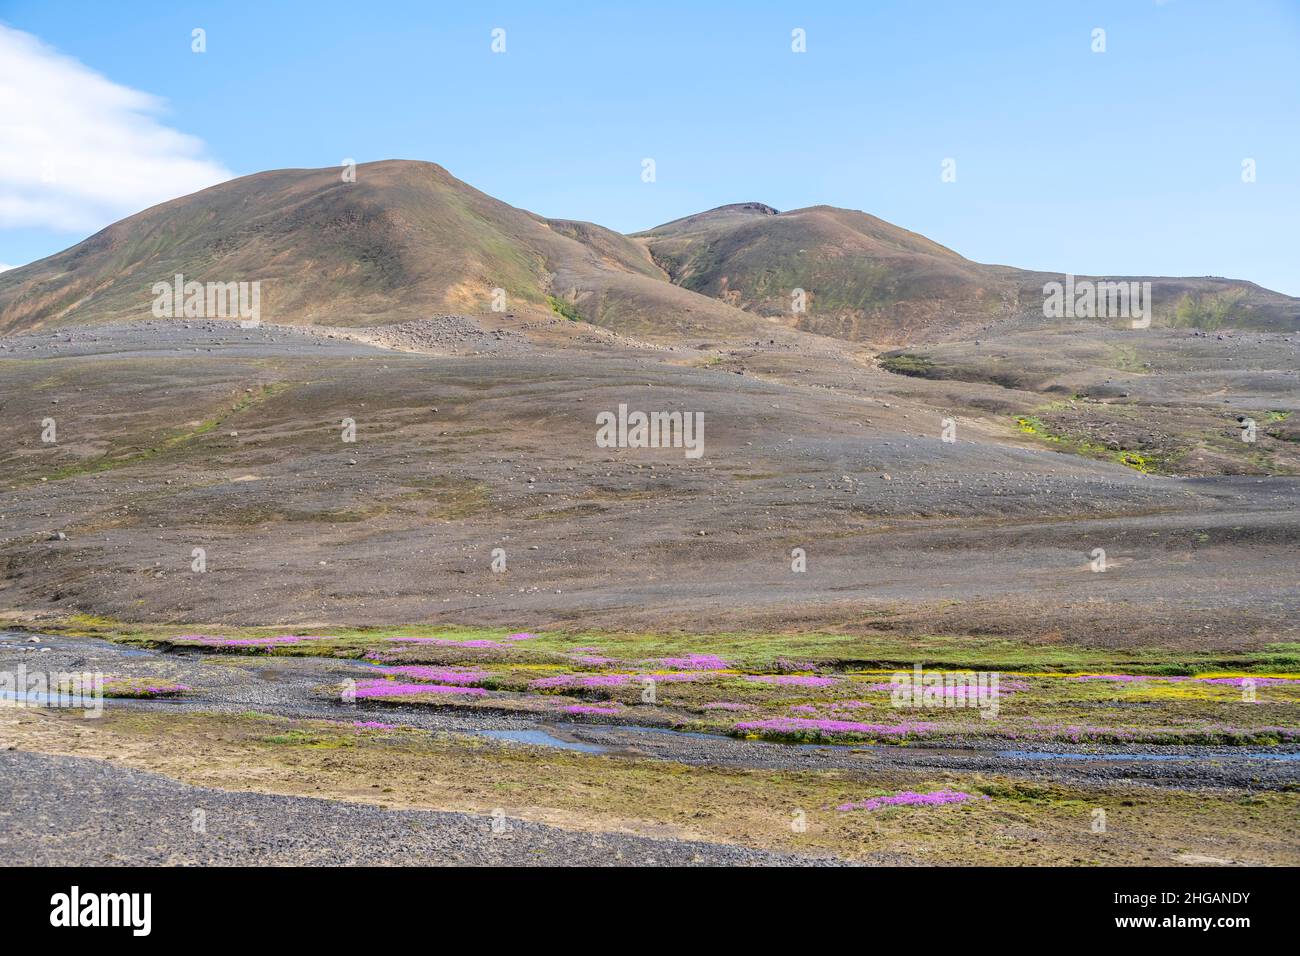 Volcanic landscape, barren landscape, Icelandic highlands, Iceland Stock Photo